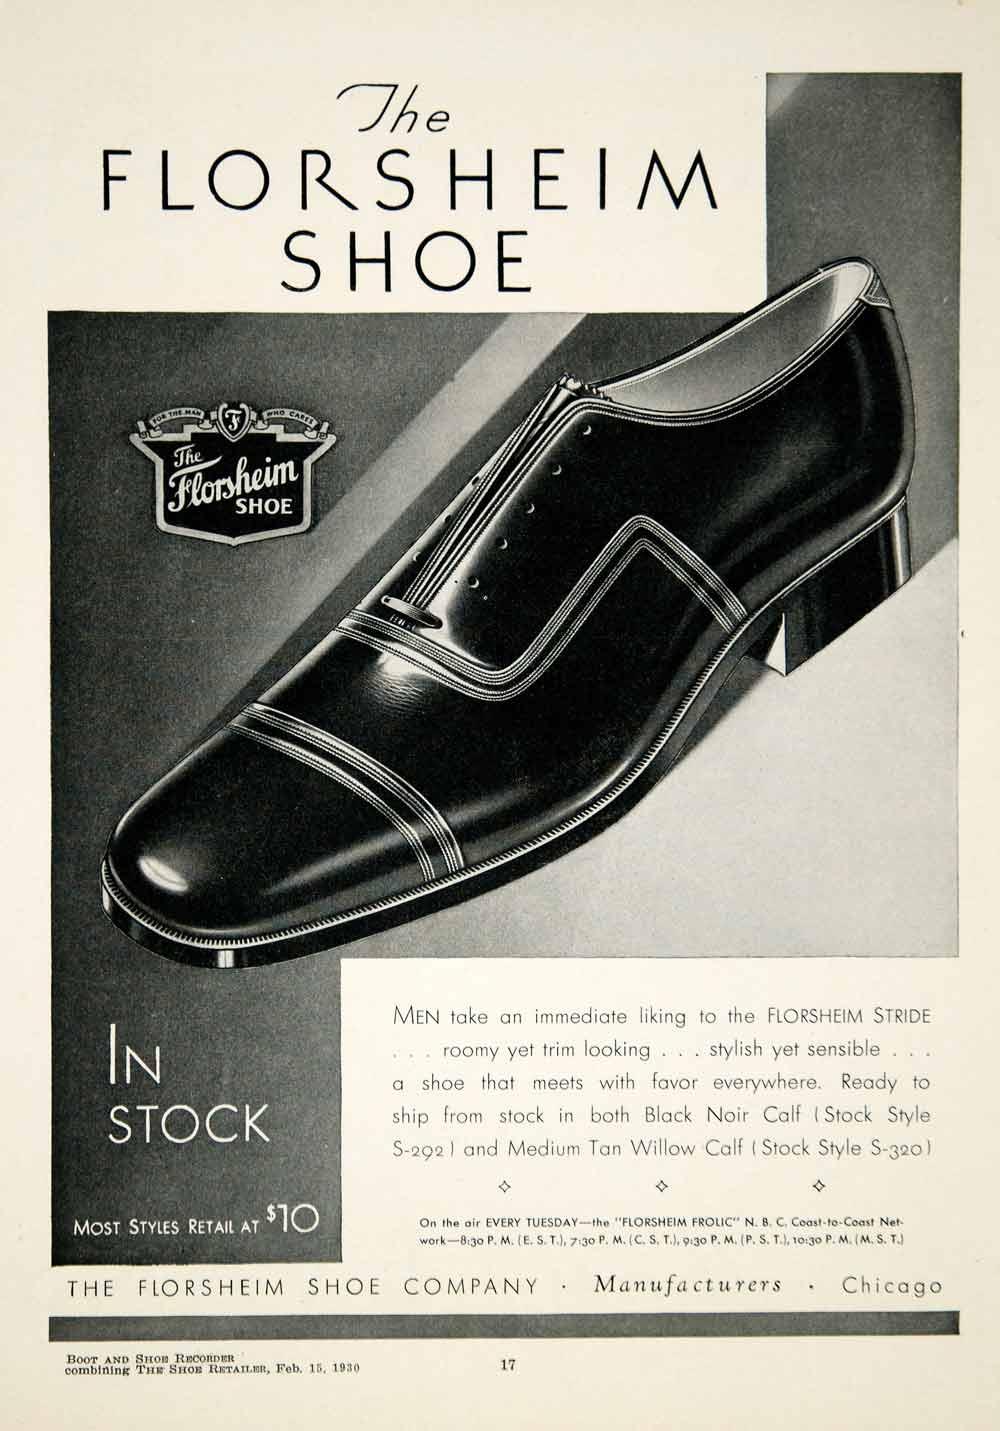 1972 Florsheim Shoe Company The Rivieras Leather Men's Shoes Vintage PRINT  AD